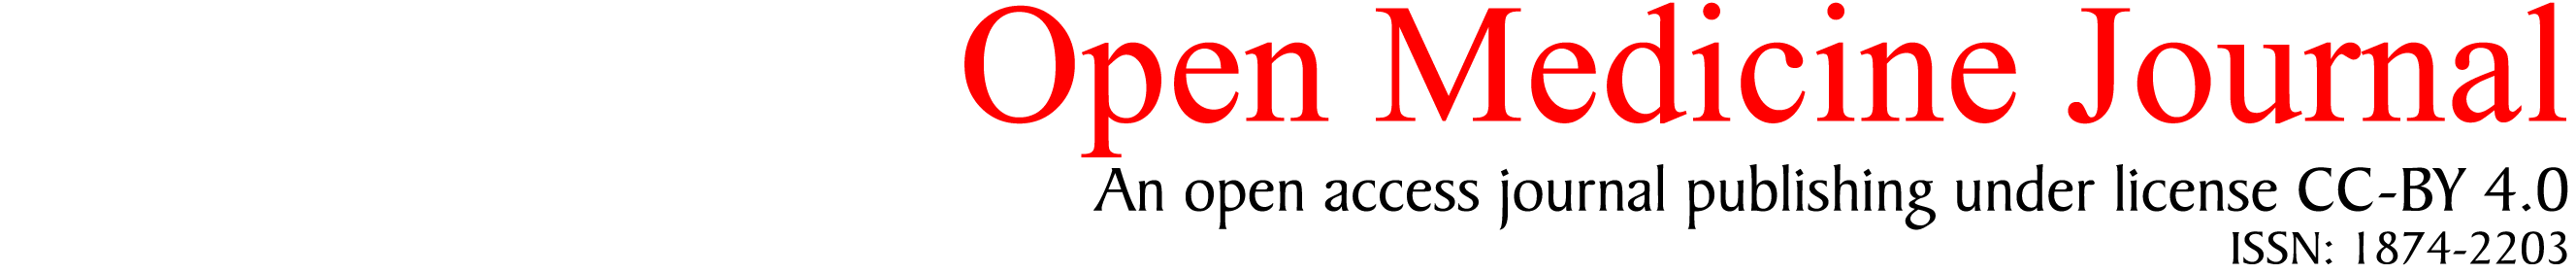 Open Medicine